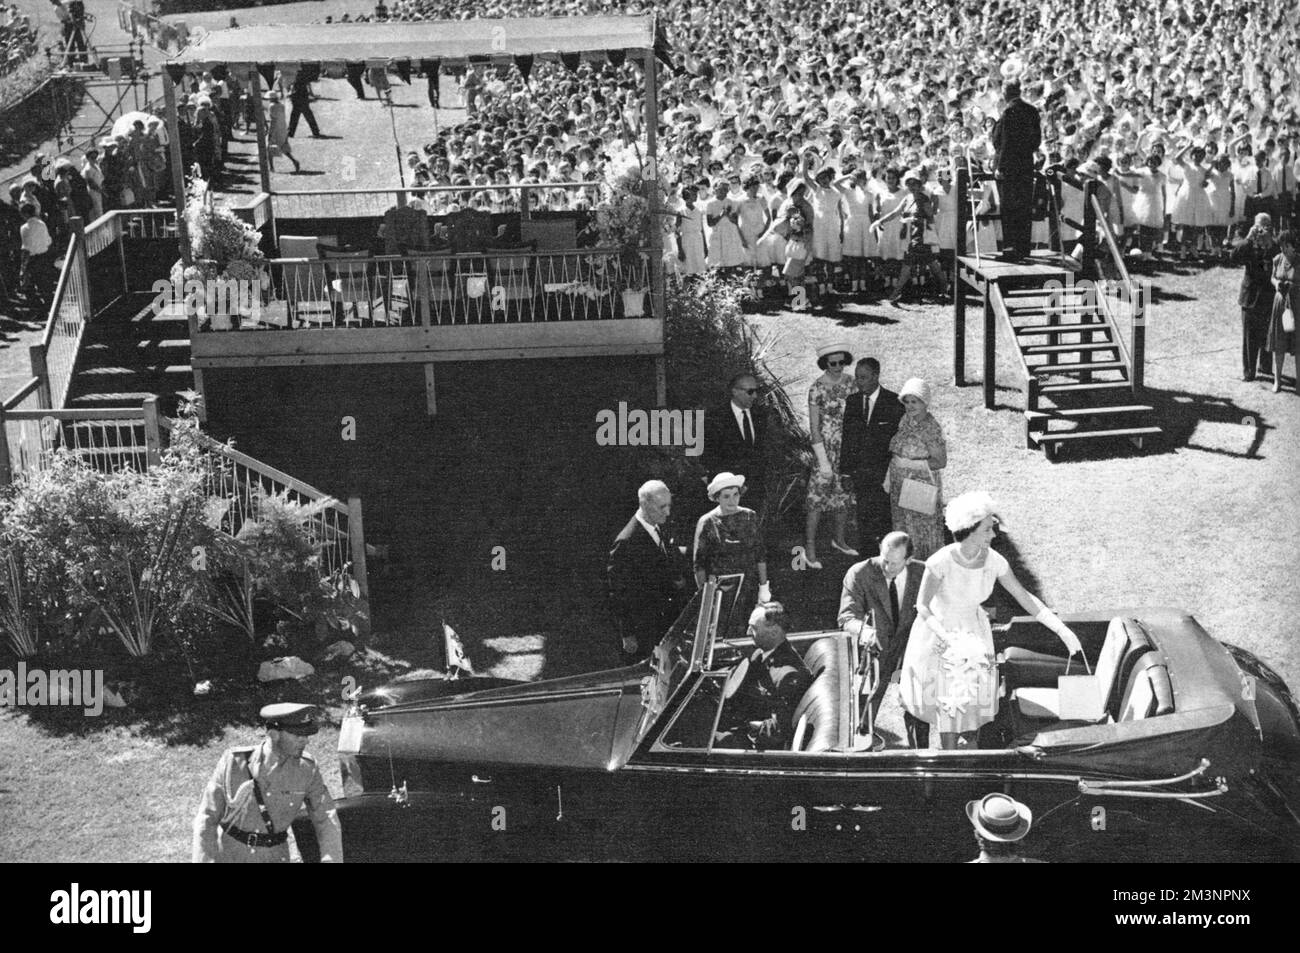 Königin Elizabeth II. Und Prinz Philip verlassen die Rennbahn im Victoria Park in Adelaide, nachdem ein Chor mit 3000 Kindern australische Lieder gesungen hat. Weitere 70.000 Kinder nahmen an der Veranstaltung Teil. Datum: 1963 Stockfoto